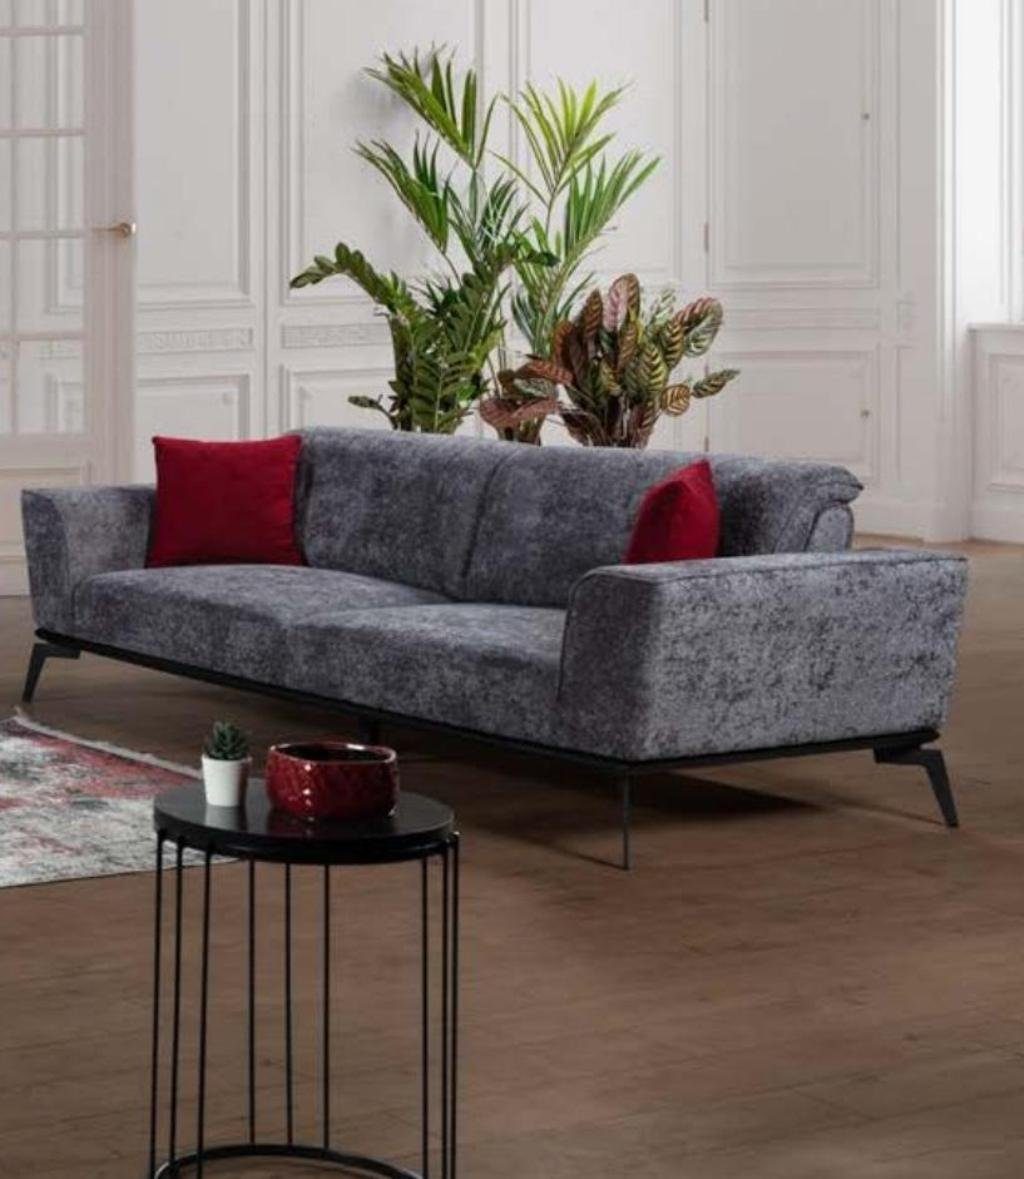 Textil Sofas Made 3-Sitzer Couch, Wohnzimmer Sofa JVmoebel Europe Grauer Möbel in Stoff Sitz